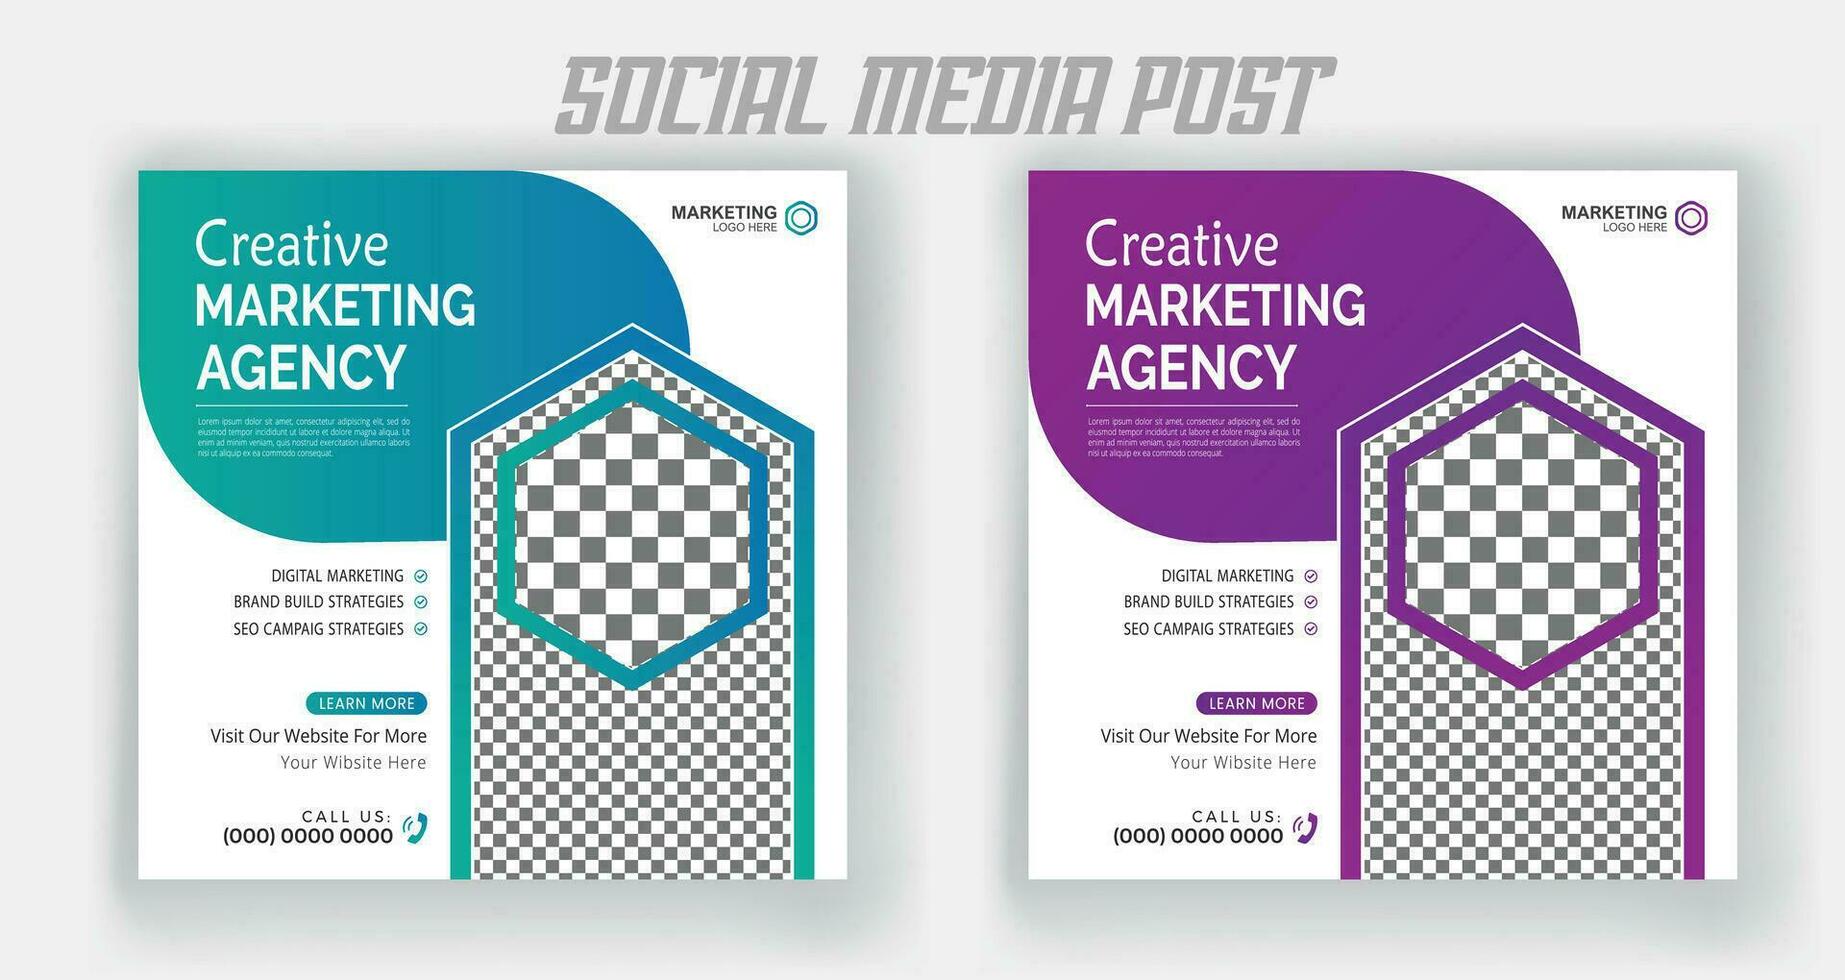 digitale marketing live webinar en zakelijke postsjabloon voor sociale media vector